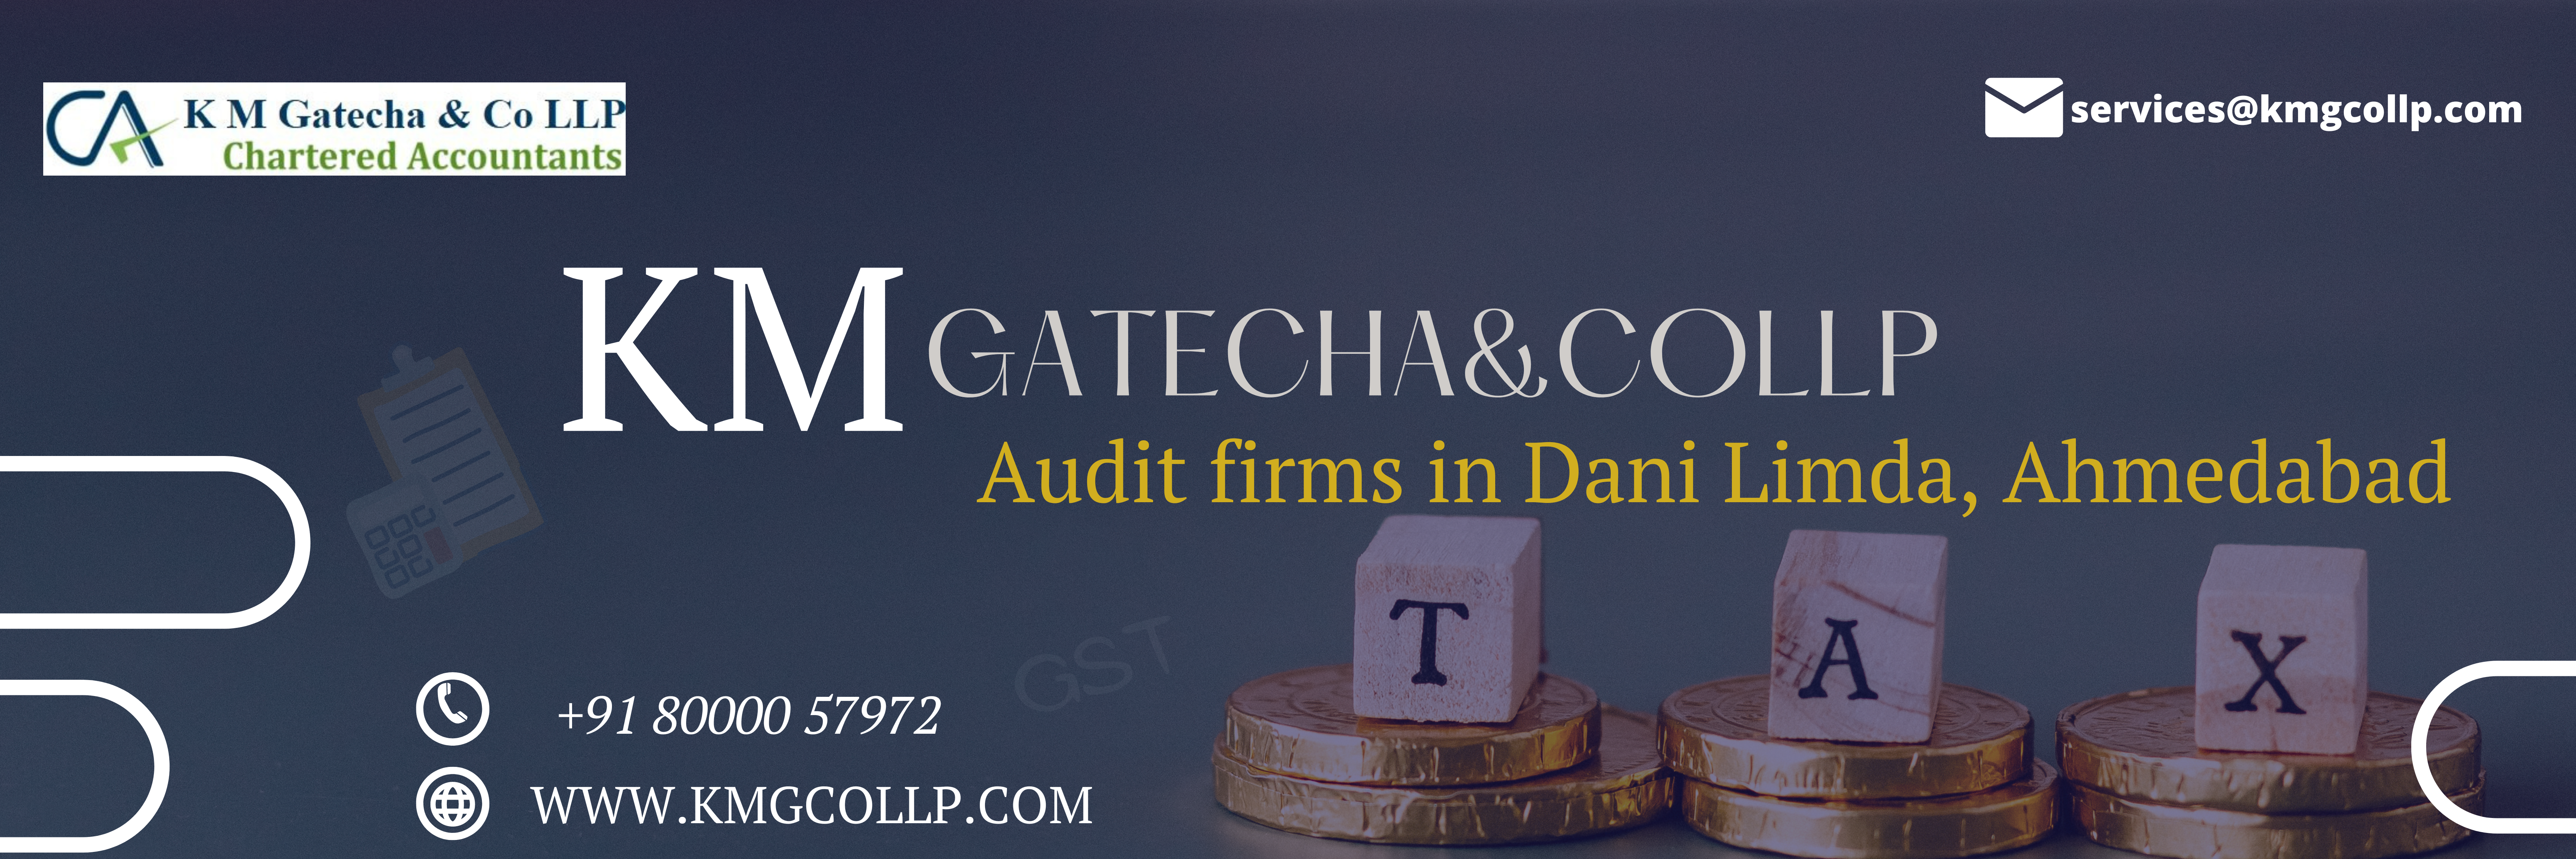 Audit firms in Dani Limda, Ahmedabad